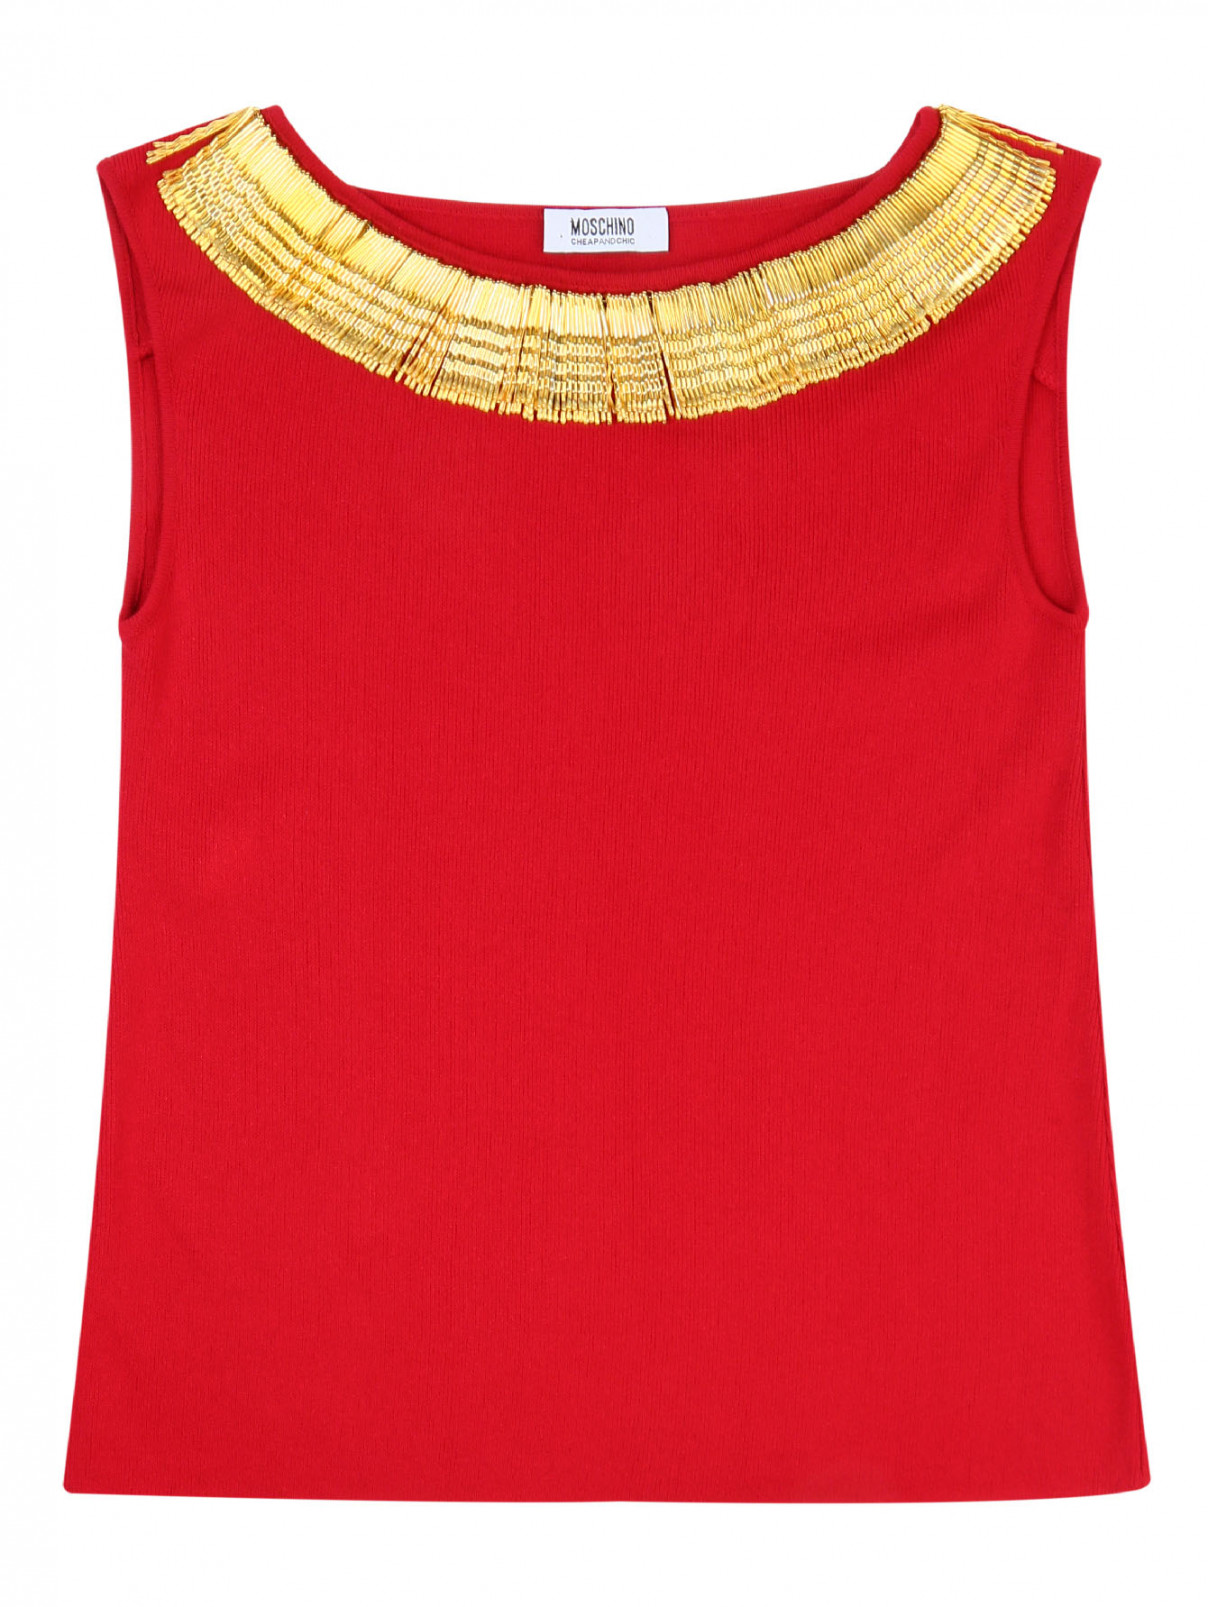 Трикотажный топ с декоративным ожерельем Moschino  –  Общий вид  – Цвет:  Красный